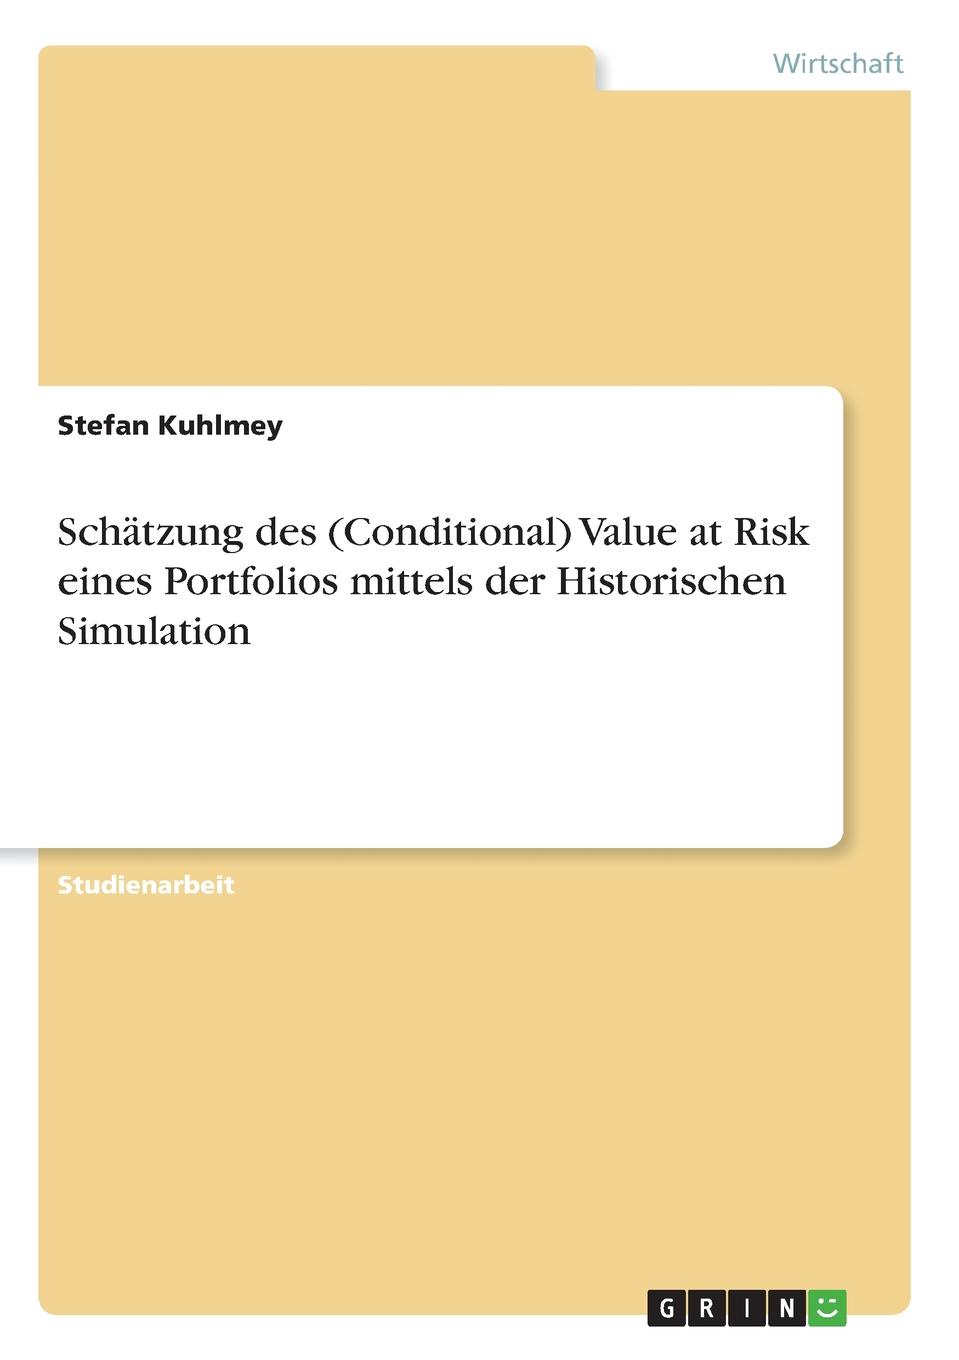 фото Schatzung des (Conditional) Value at Risk eines Portfolios mittels der Historischen Simulation